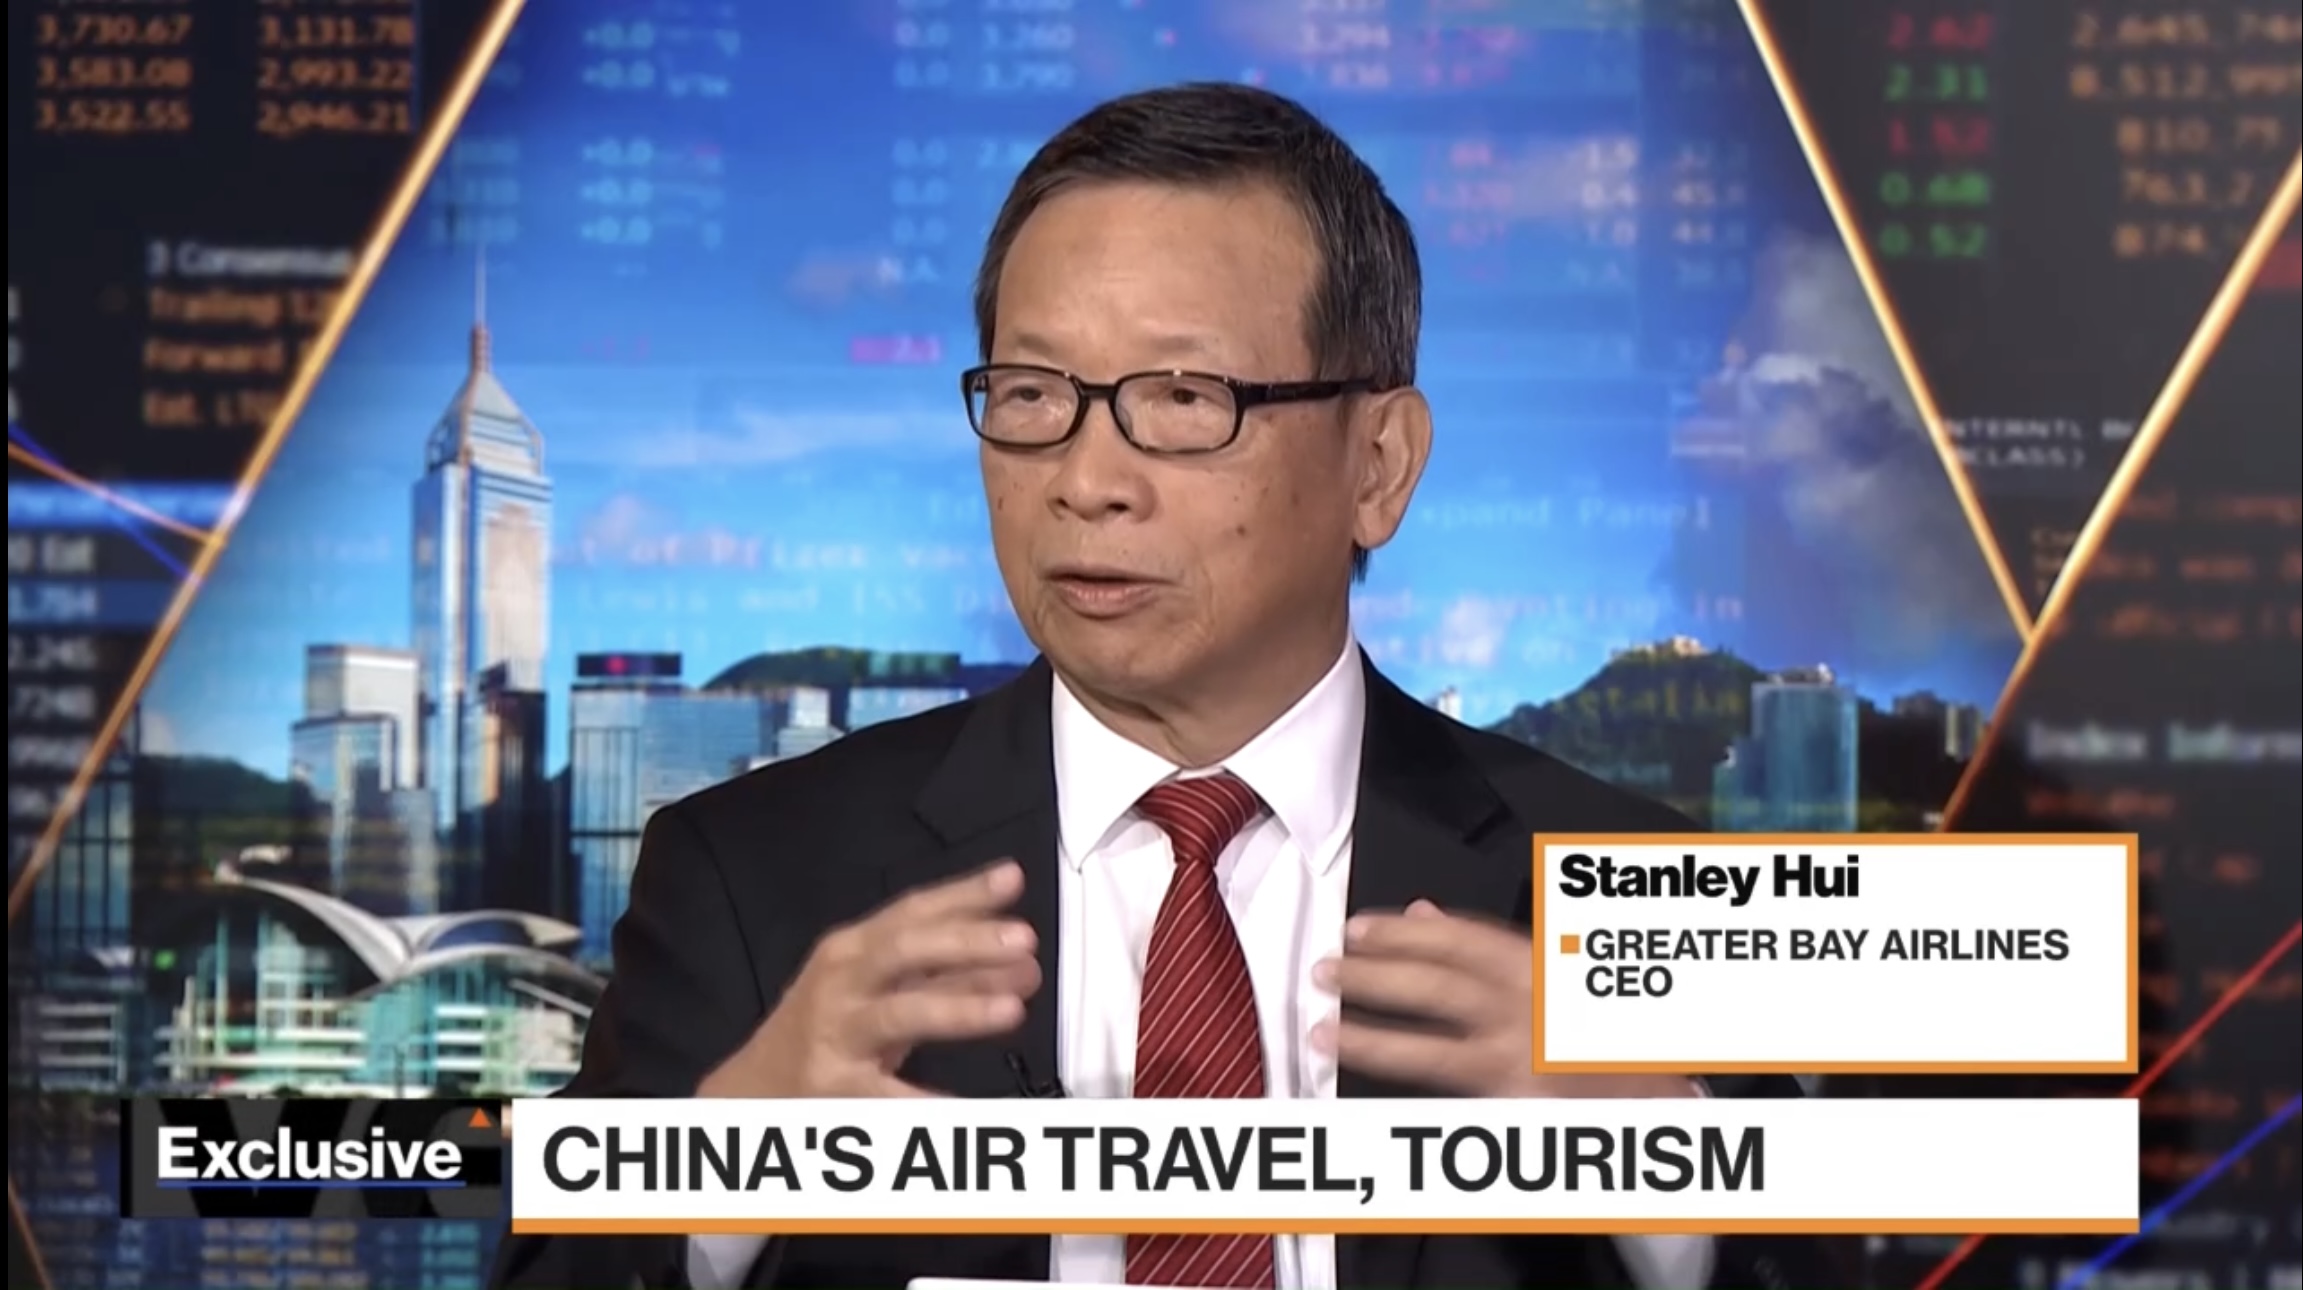 行政總裁許漢忠分享對亞太區航空業發展的見解